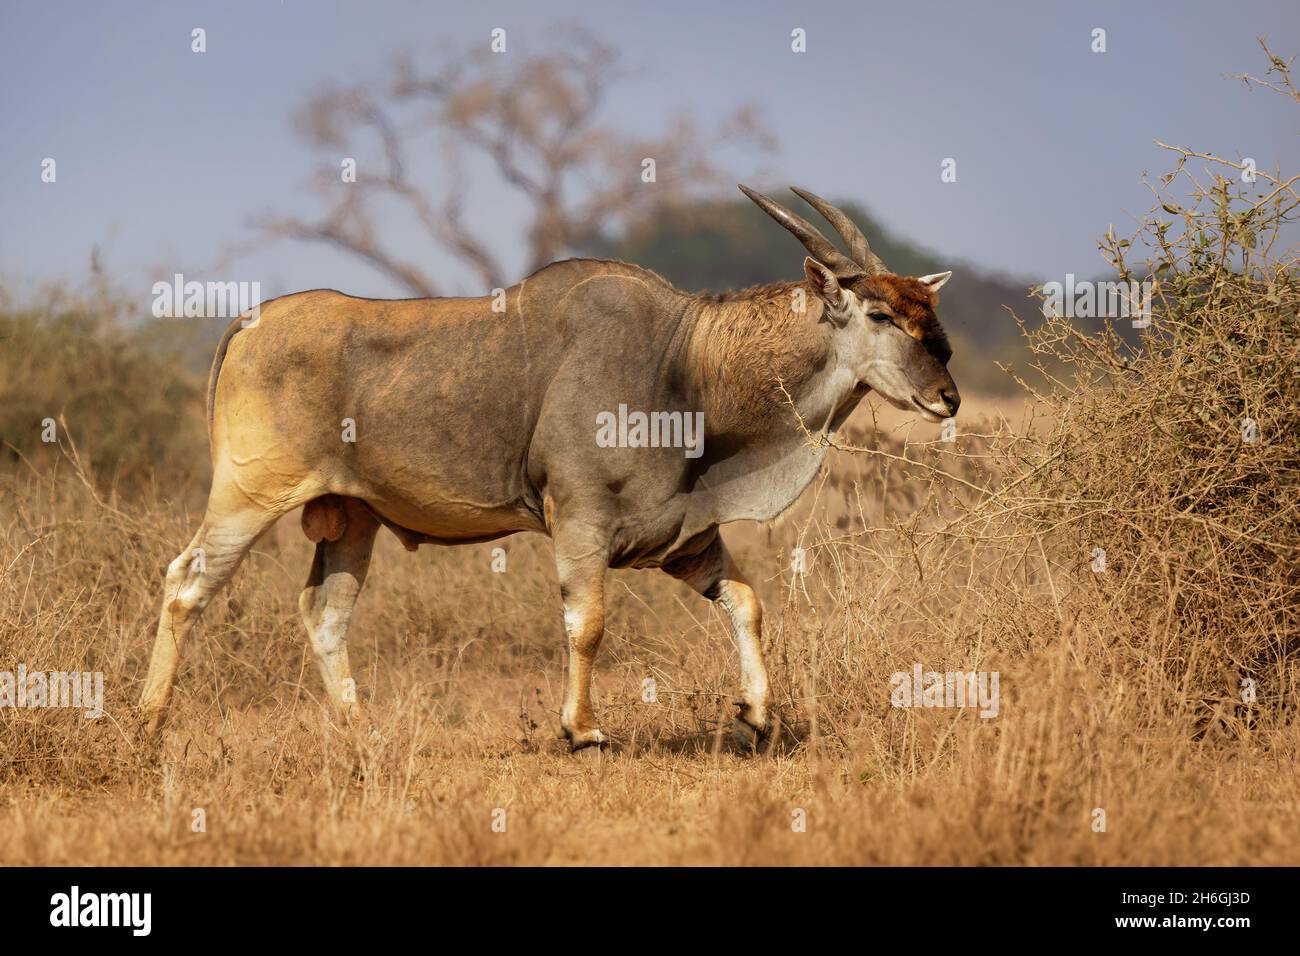 Gemeinsame Eland - taurotragus Oryx auch die südlichen Eland oder eland Antilope, Savanne und Prärie Antilope im östlichen und südlichen Afrika, Familie Bovi gefunden Stockfoto